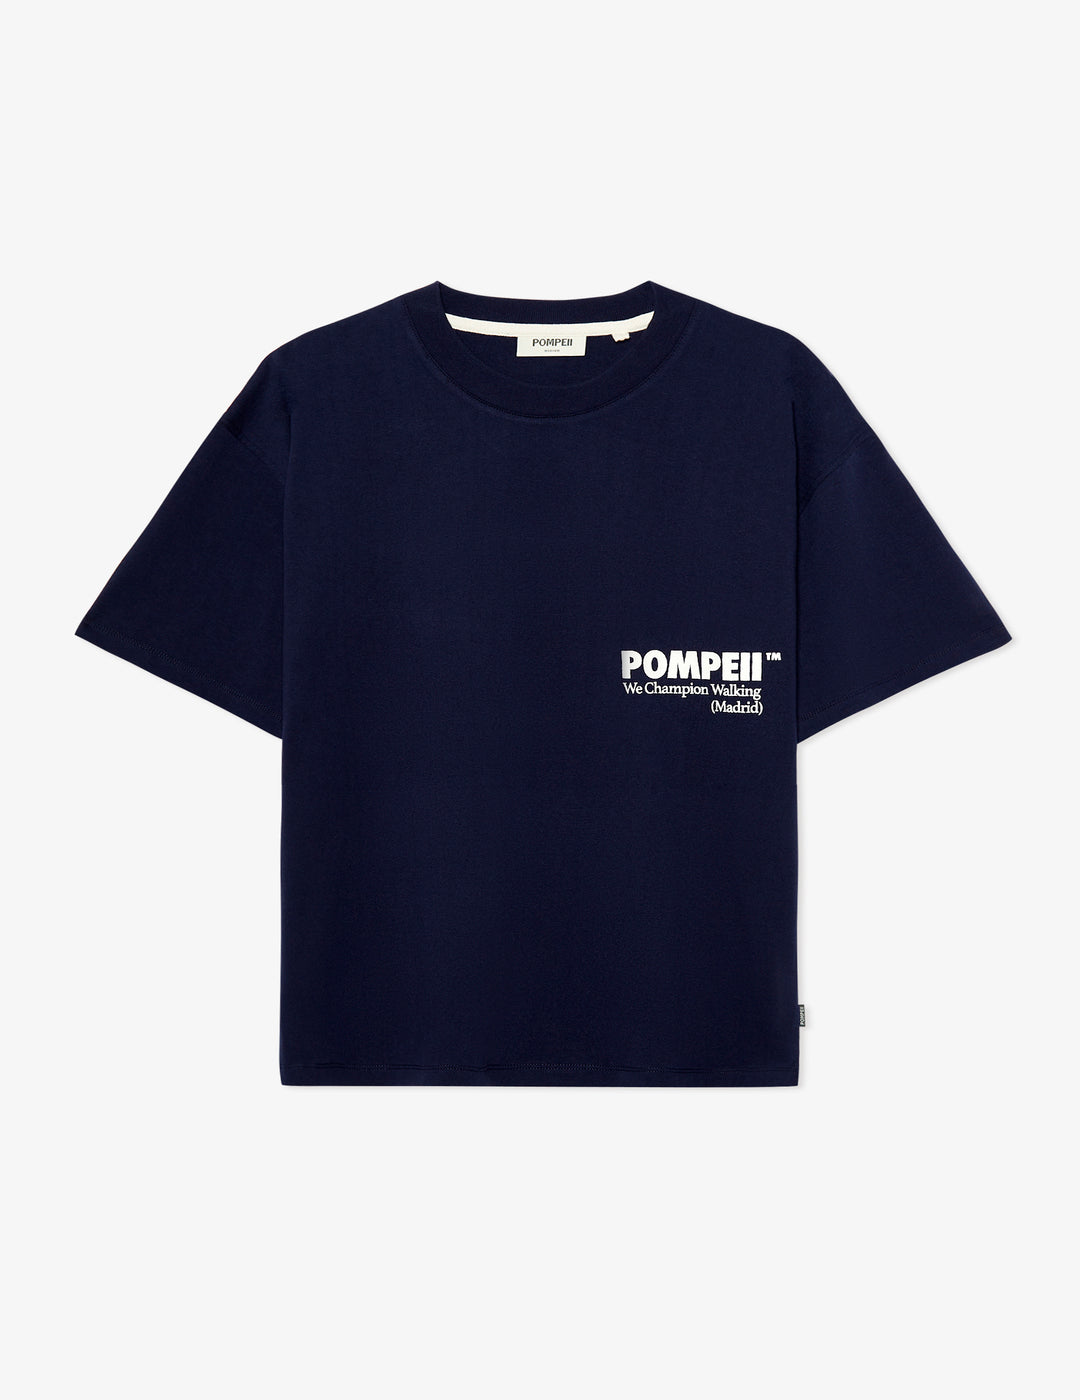 Camiseta Pompeii Navy Boxy Graphic Tee